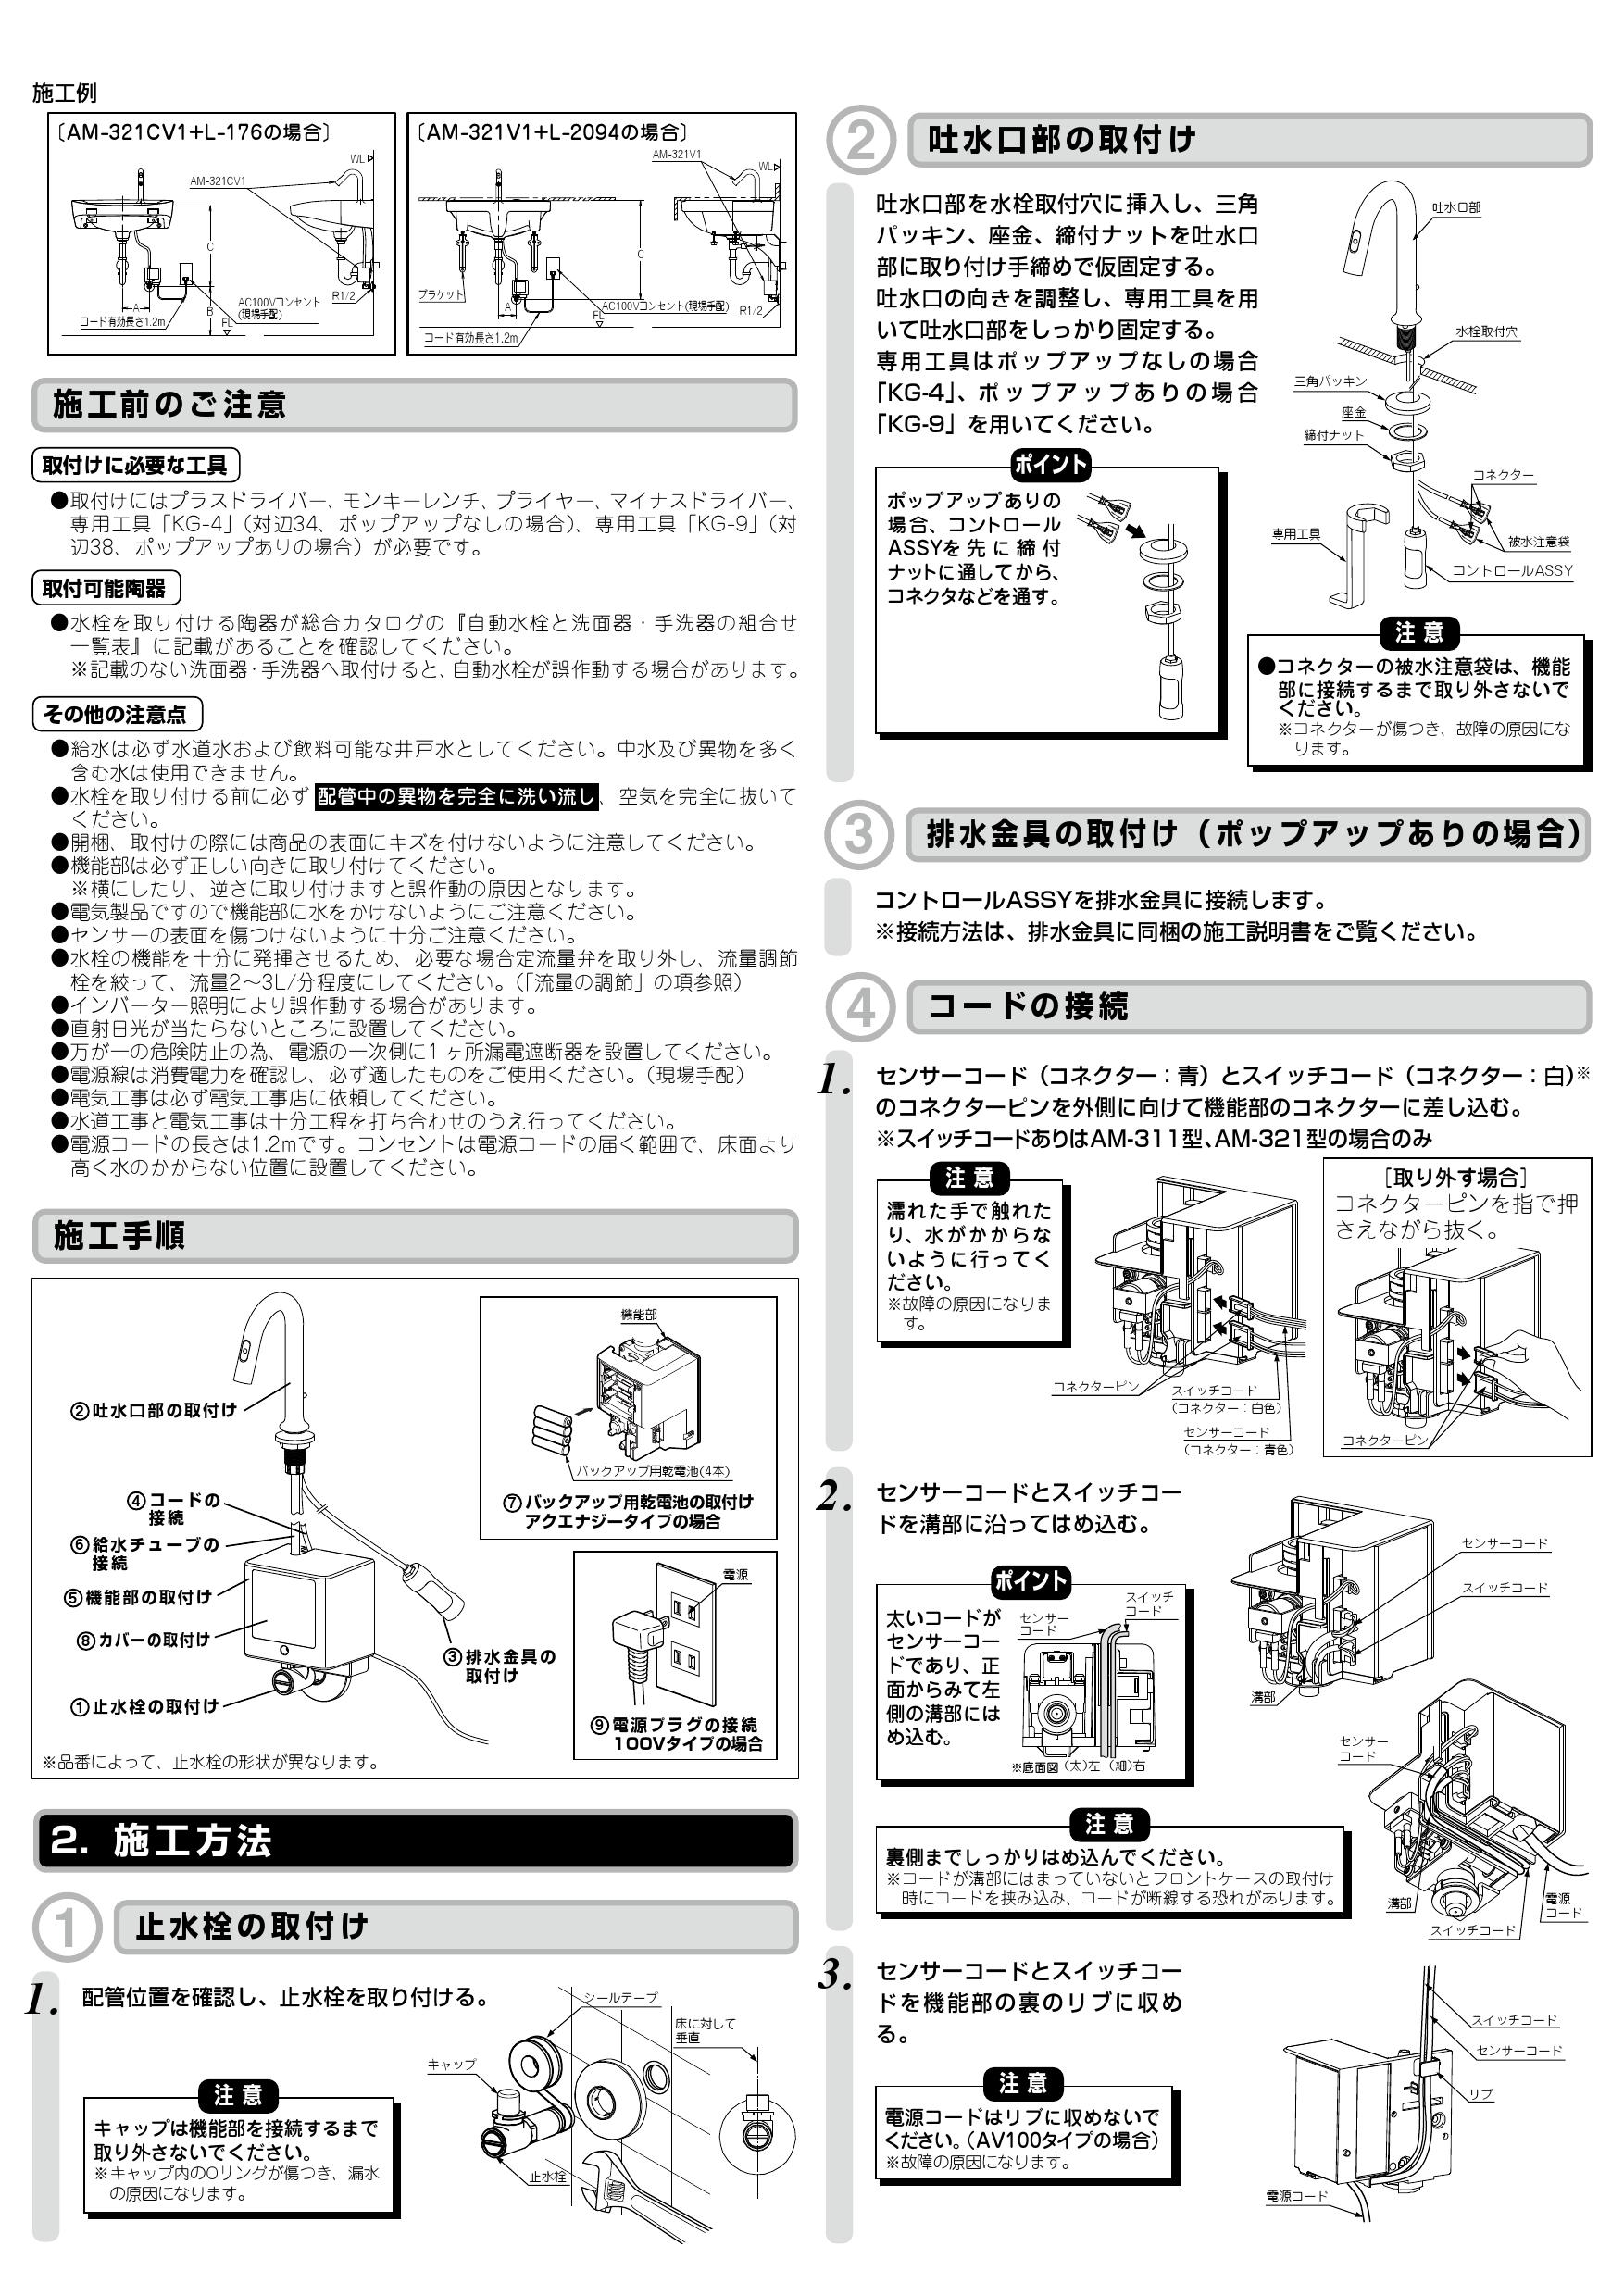 34372円 【77%OFF!】 LIXIL リクシル 洗面器 水栓金具 オートマージュMXAM-320自動水栓